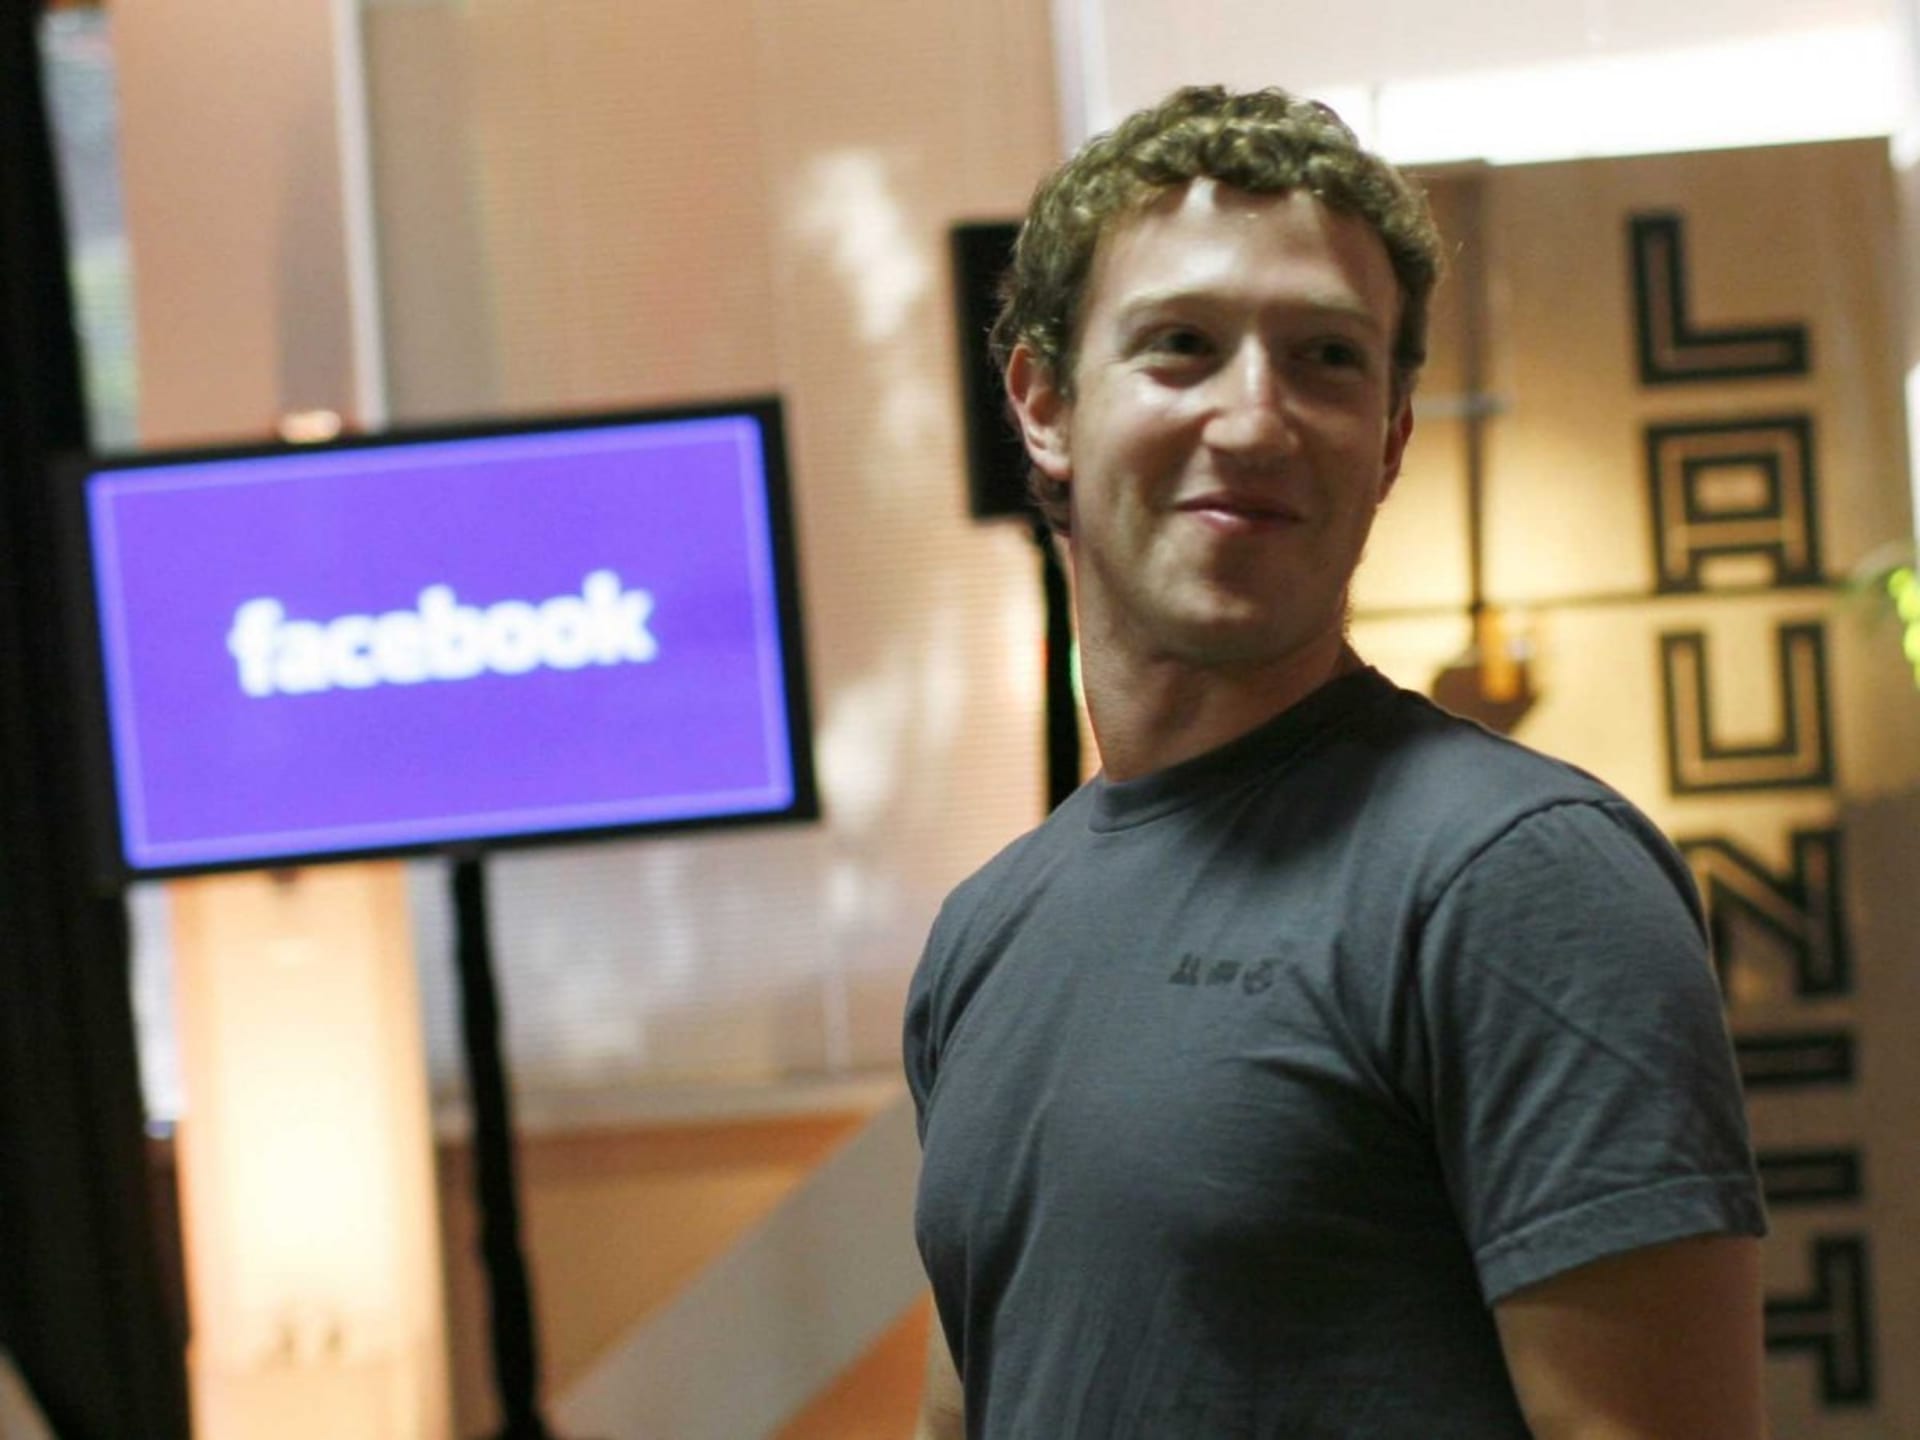 Napadlo vás někdy, proč je Facebook modrý? My to víme. Mark Zuckerberg trpí červeno-zelenou slepotou. Modrou rozeznává dobře ve všech odstínech